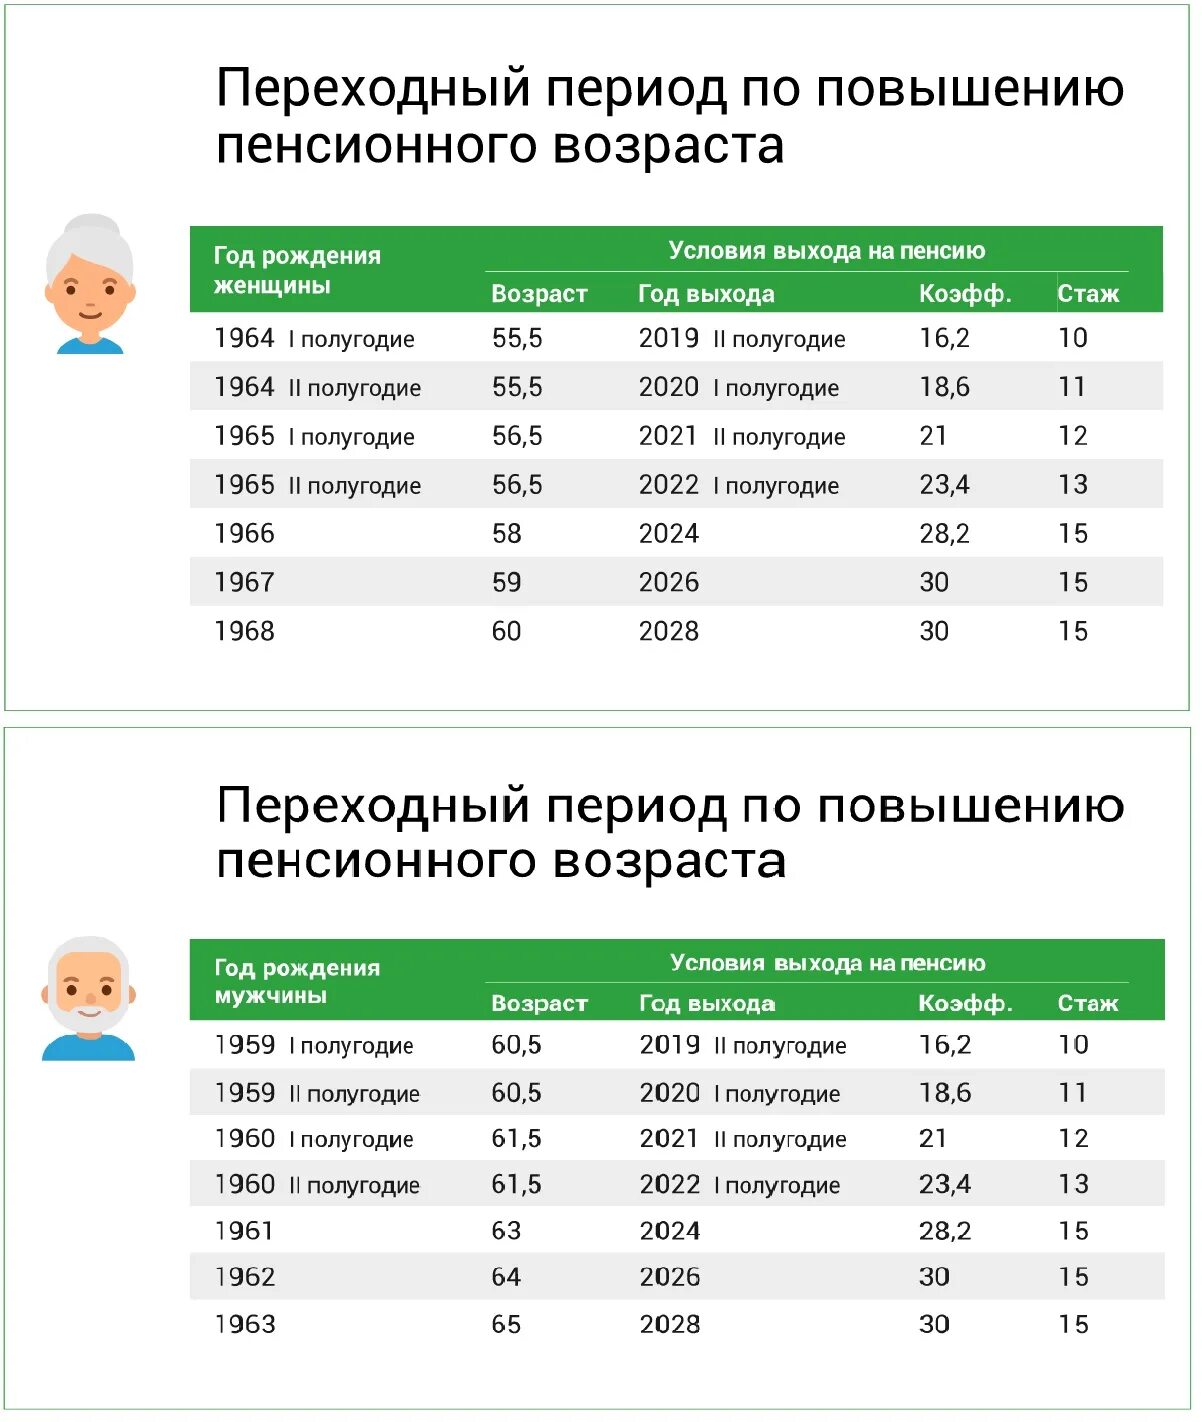 Про пенсионный возраст в россии сегодня. Переходный период по повышению пенсионного возраста таблица. Пенсионный Возраст в 2021 году таблица. Таблица переходного периода пенсионного возраста. Возраст выхода на пенсию по годам с 2023.